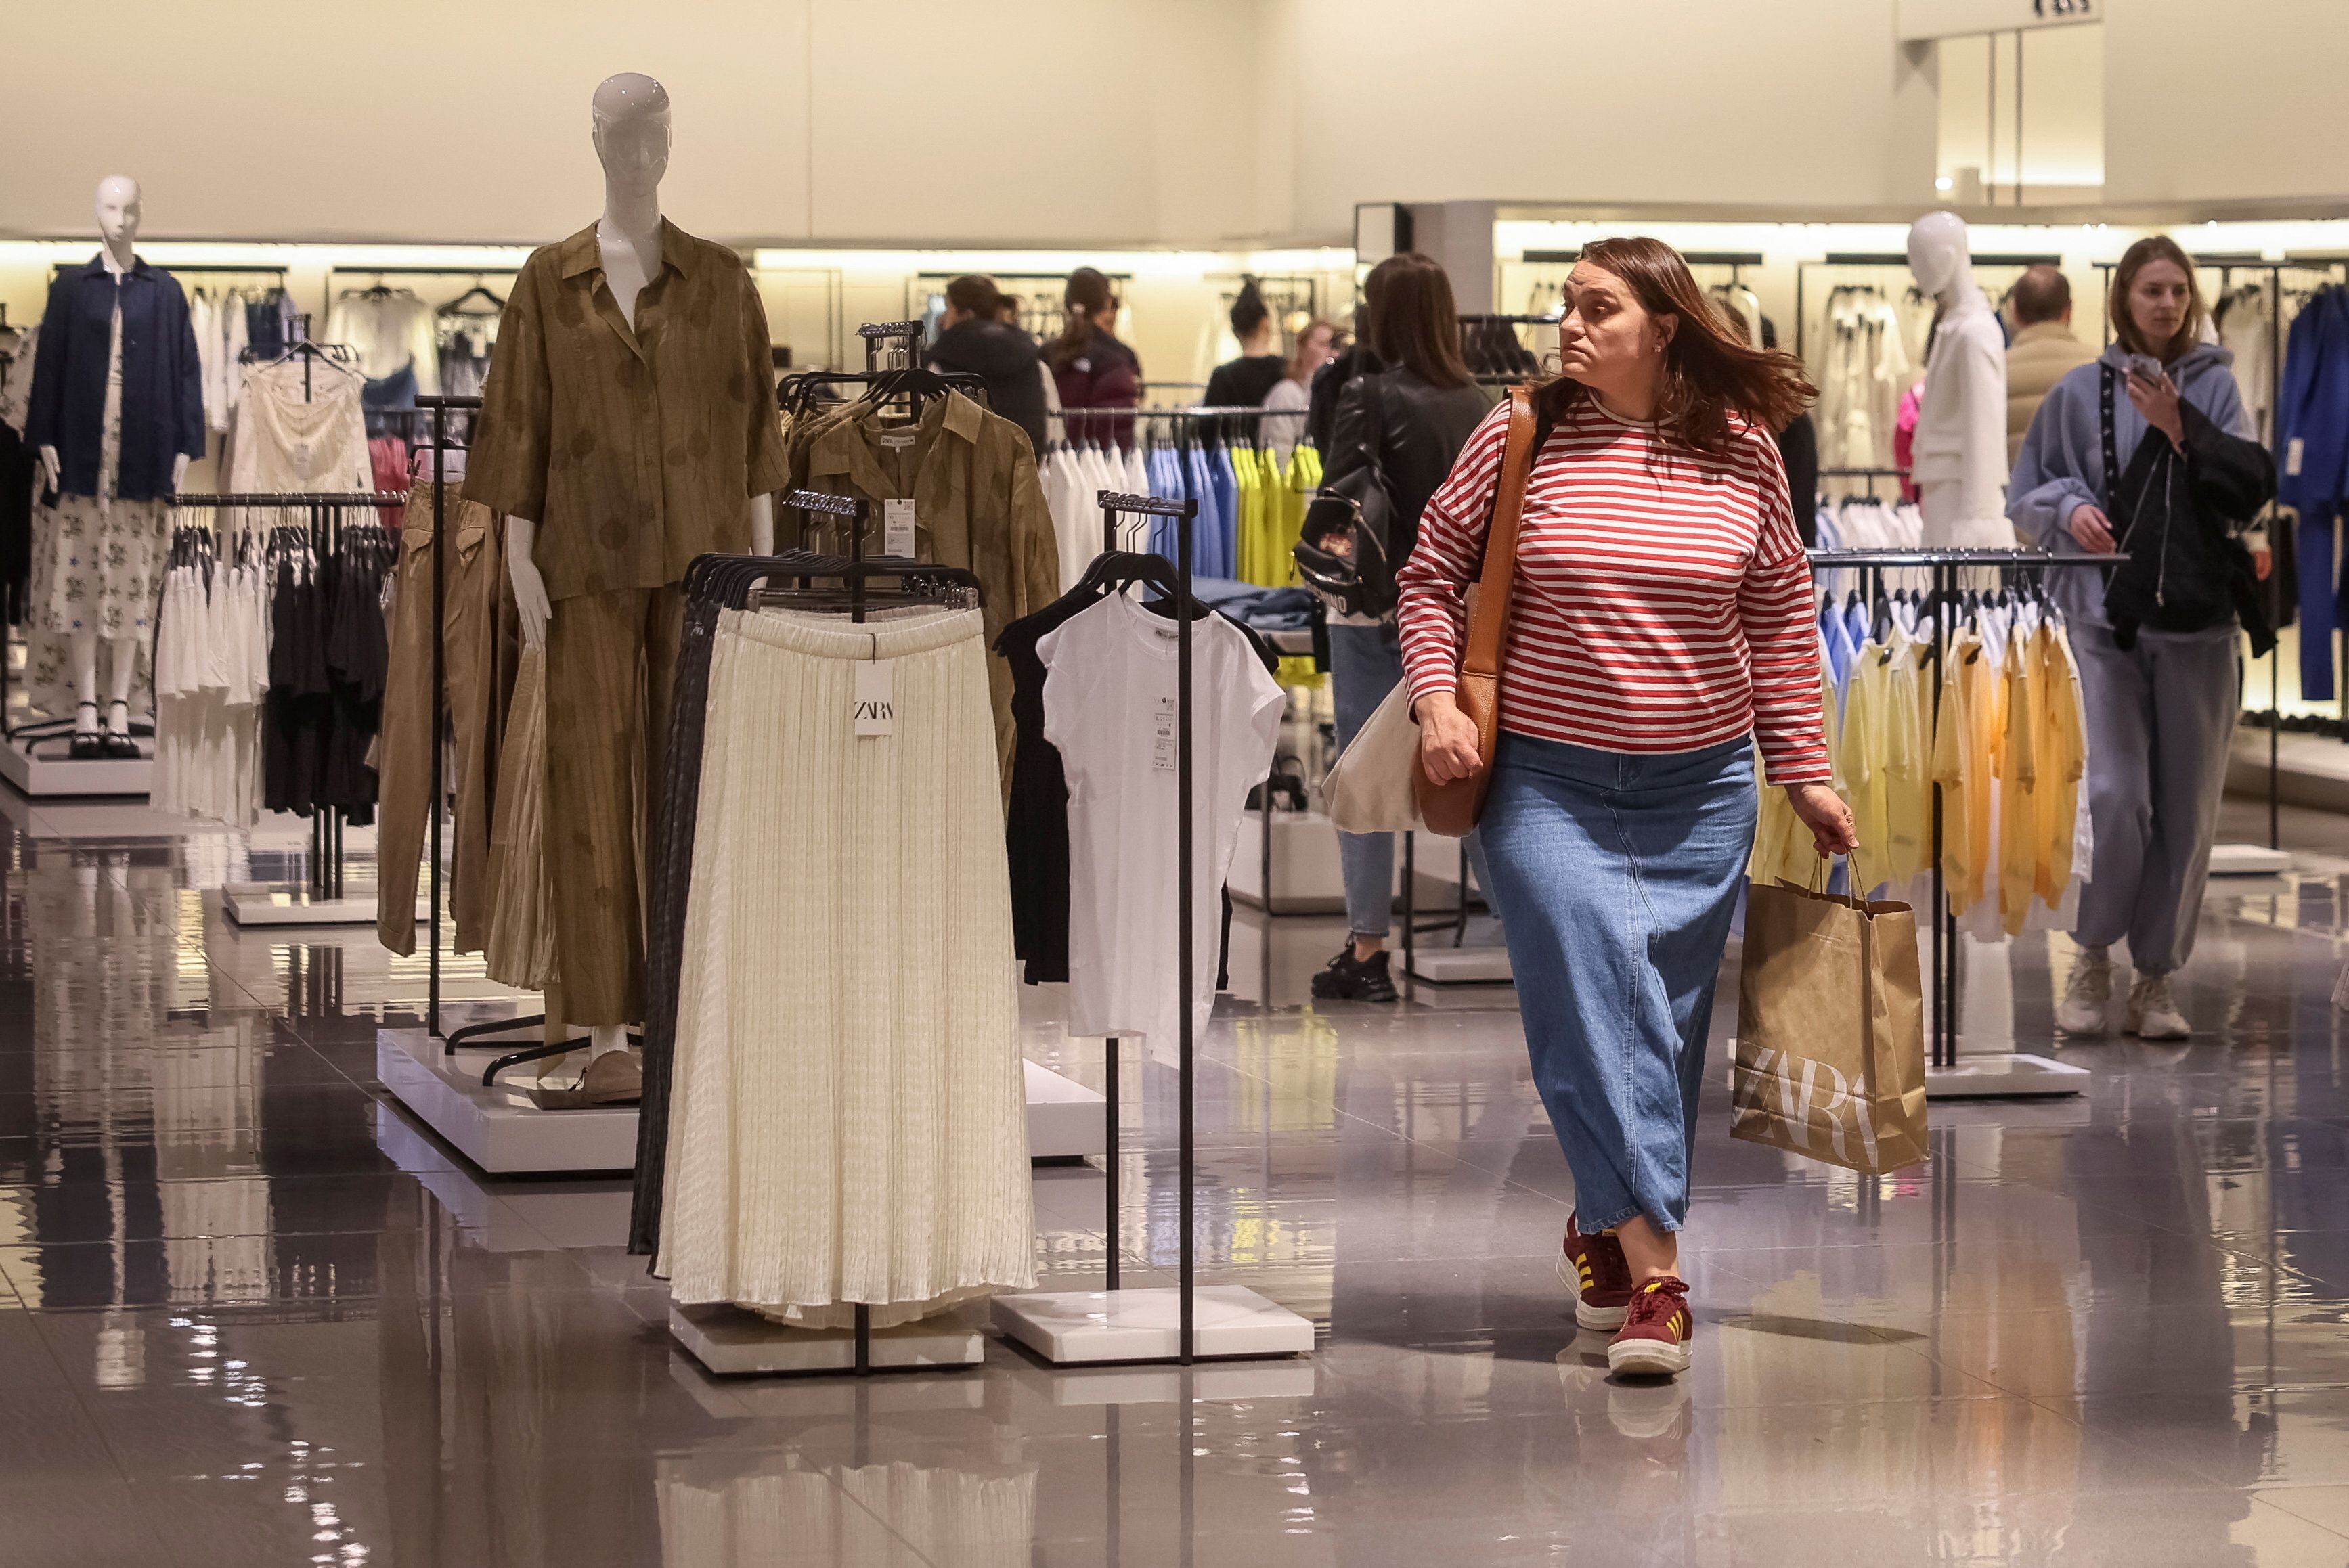 Datos preliminares de los shoppings, dieron cuenta que la venta de ropa cayó en marzo más de 30% en volumen de operaciones (Reuters)